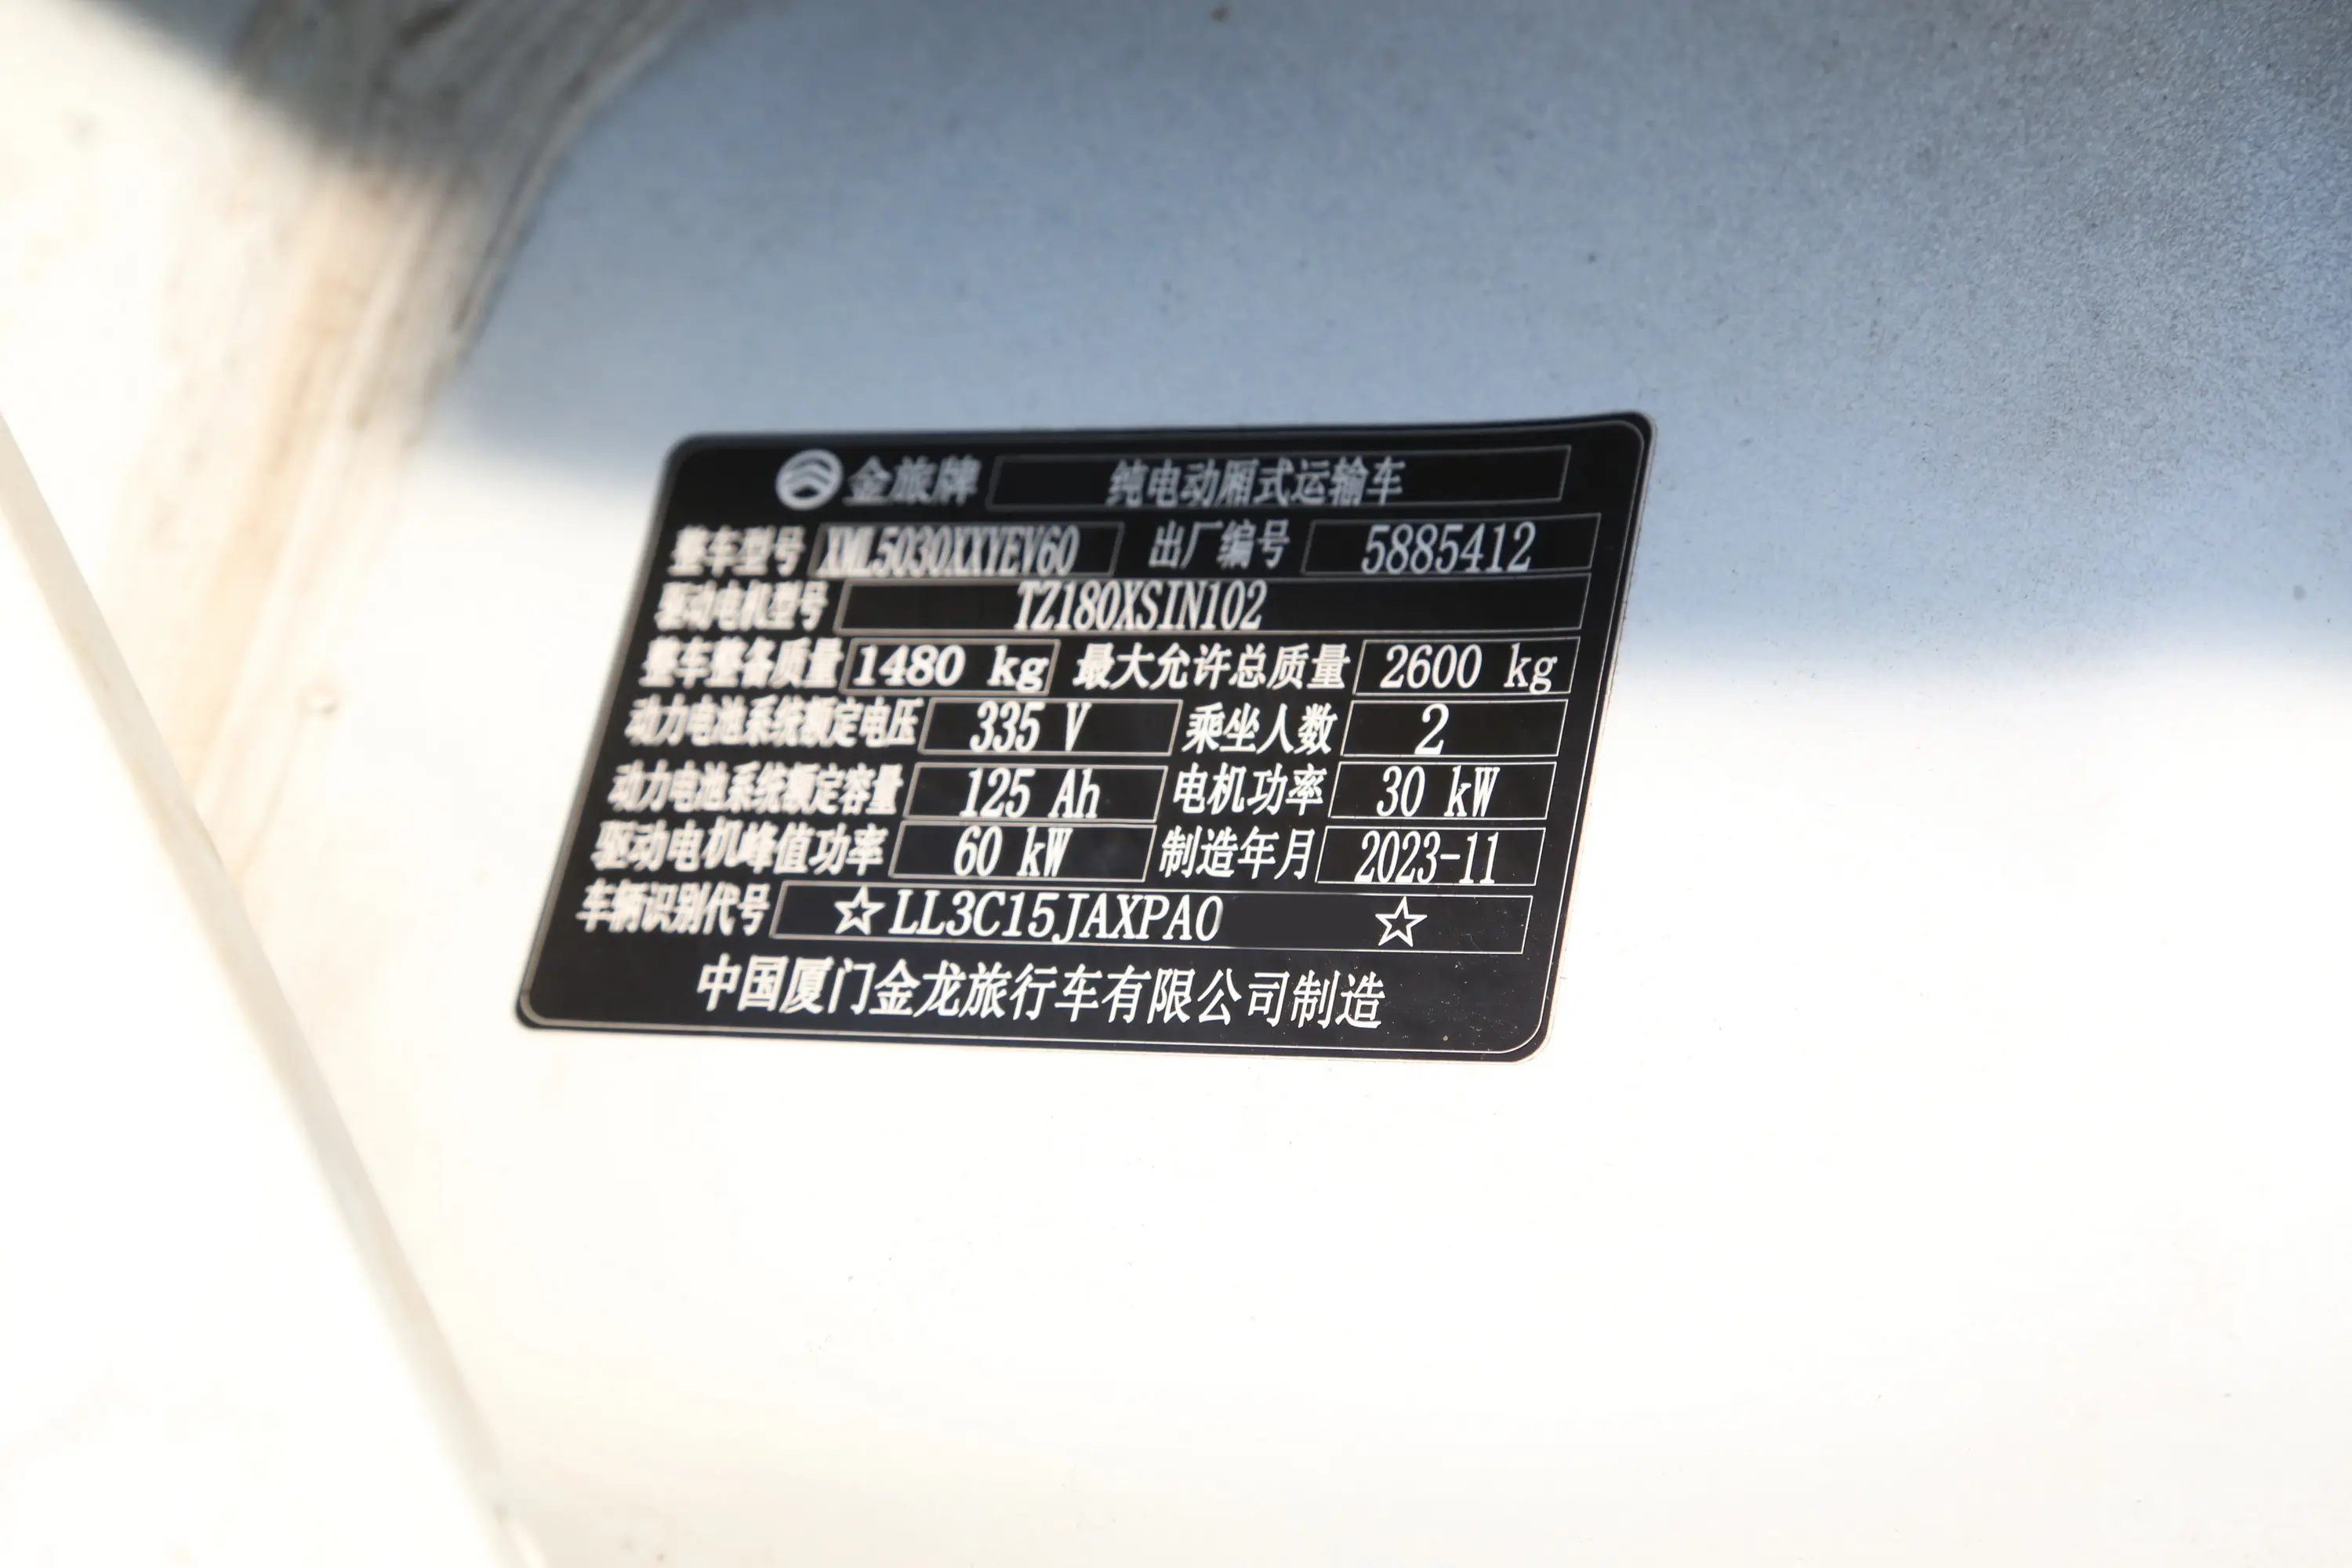 金旅海狮EV265km 龙运GLE570 2座车辆信息铭牌